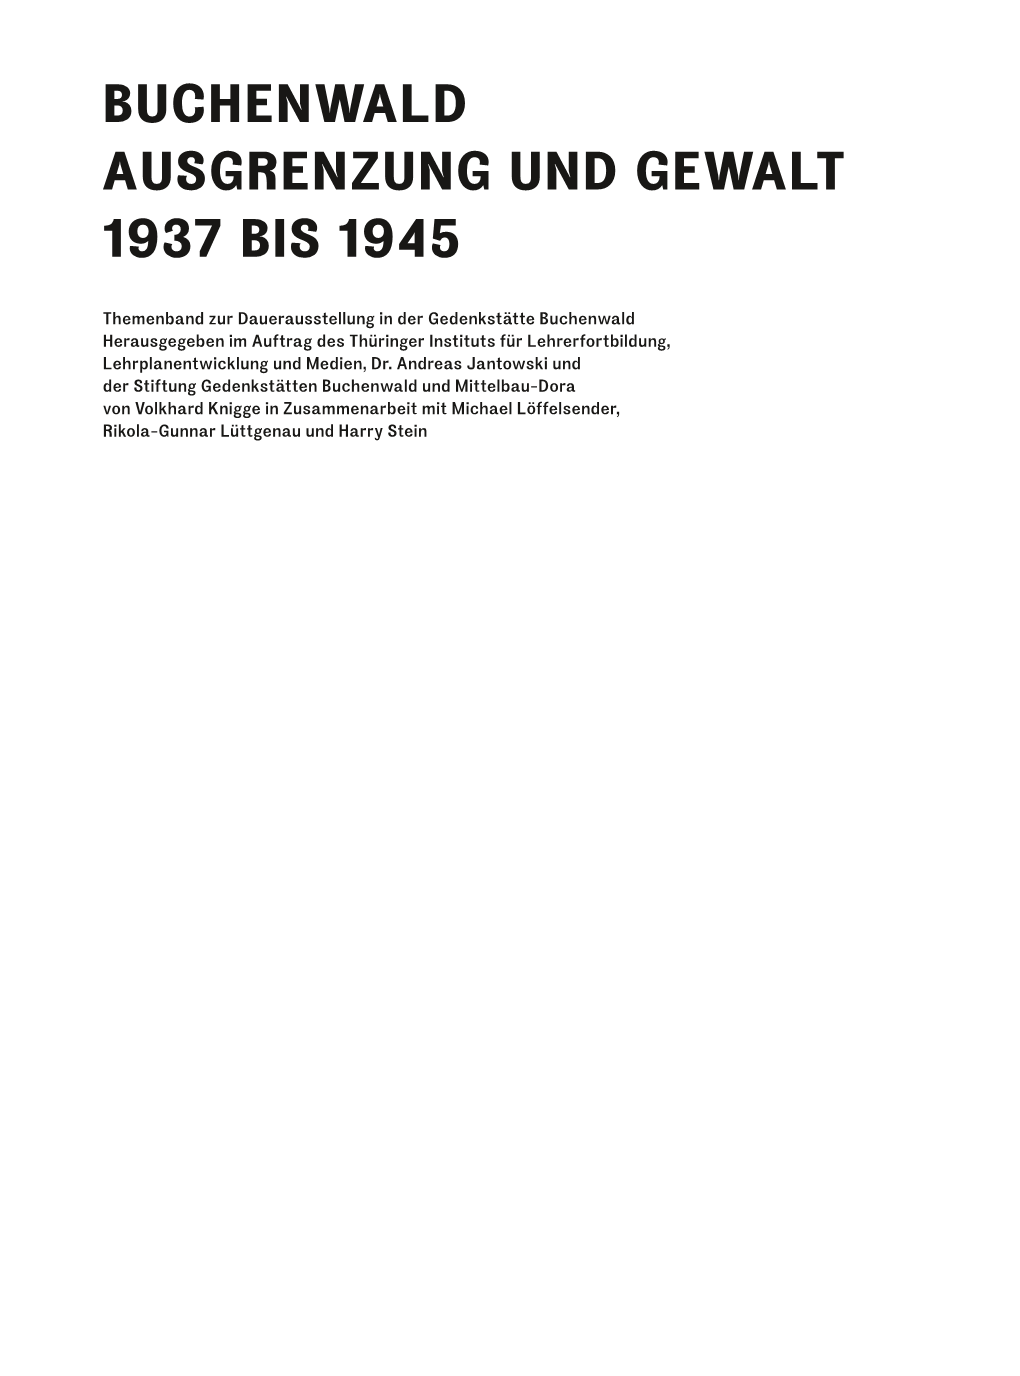 Buchenwald Ausgrenzung Und Gewalt 1937 Bis 1945